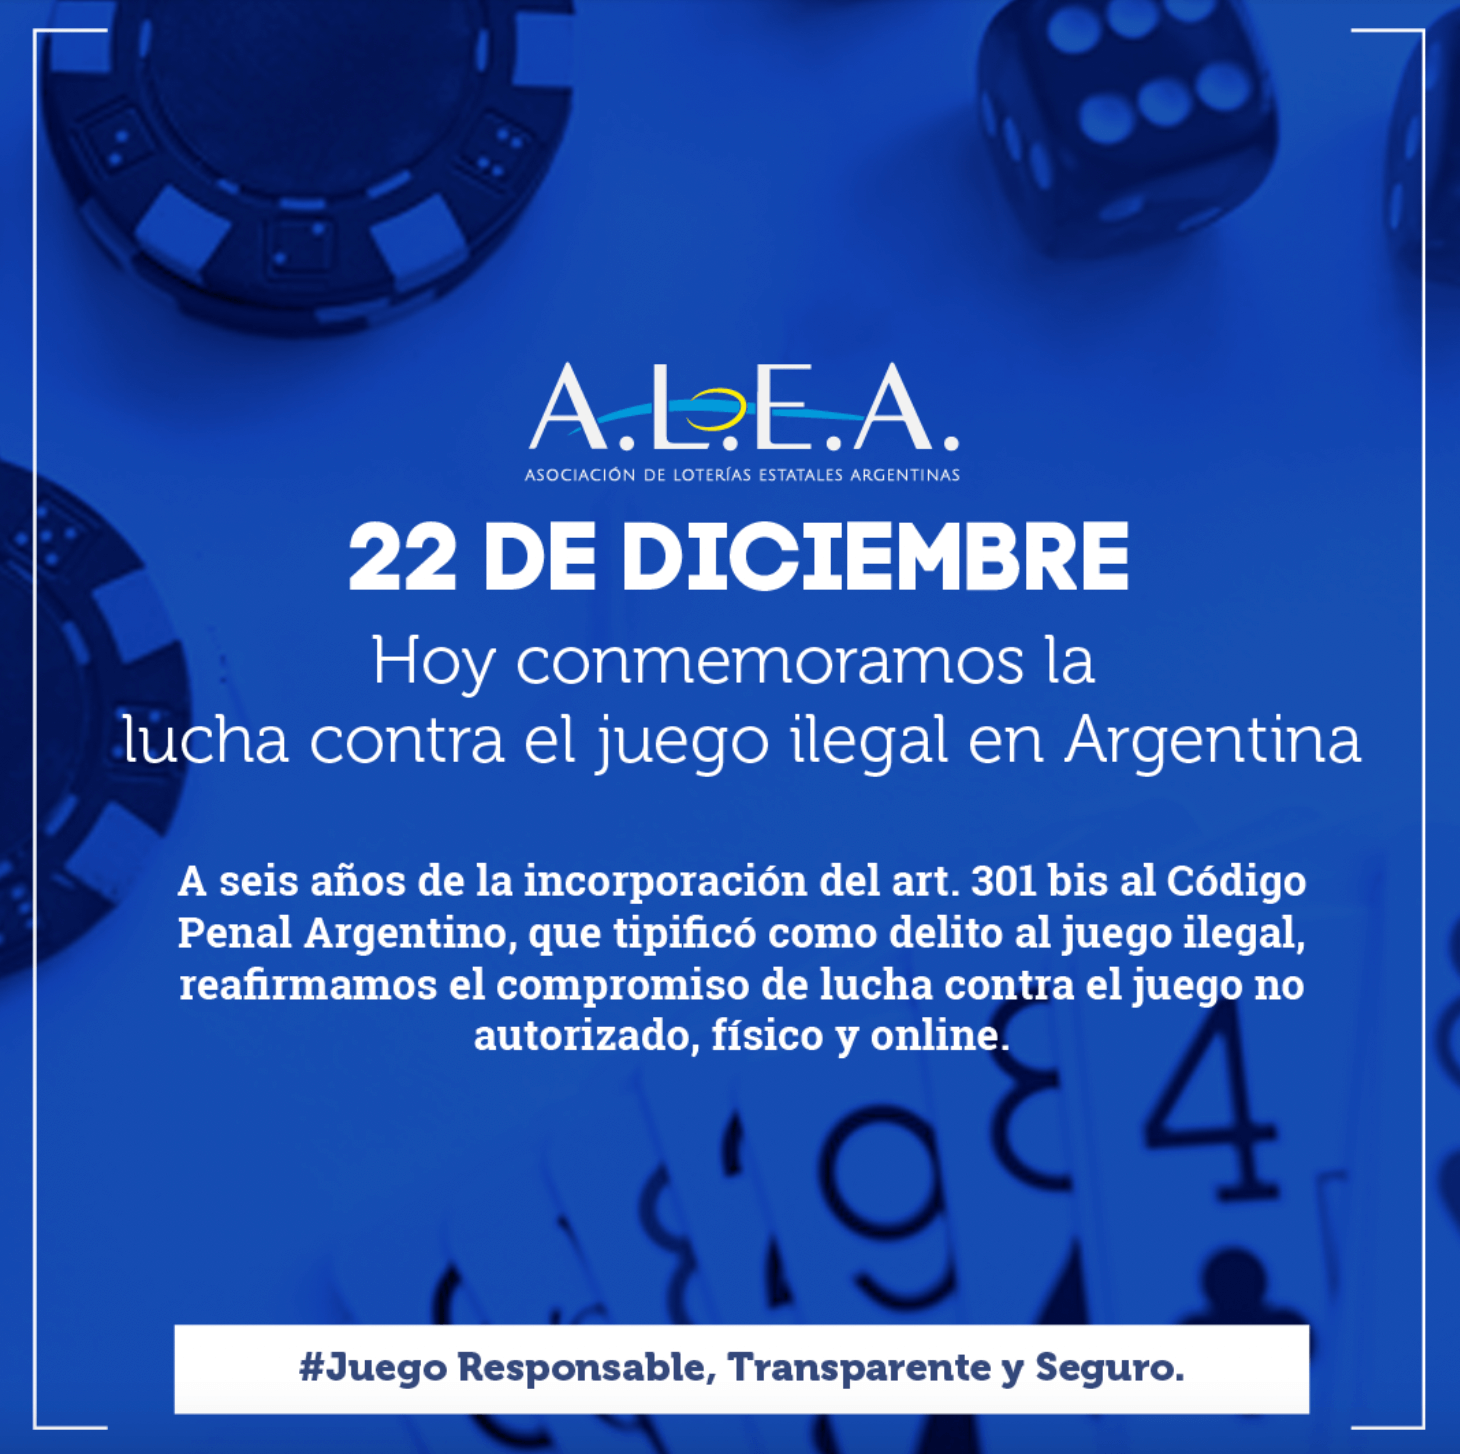 22 de diciembre: Día de la lucha contra el juego ilegal en Argentina